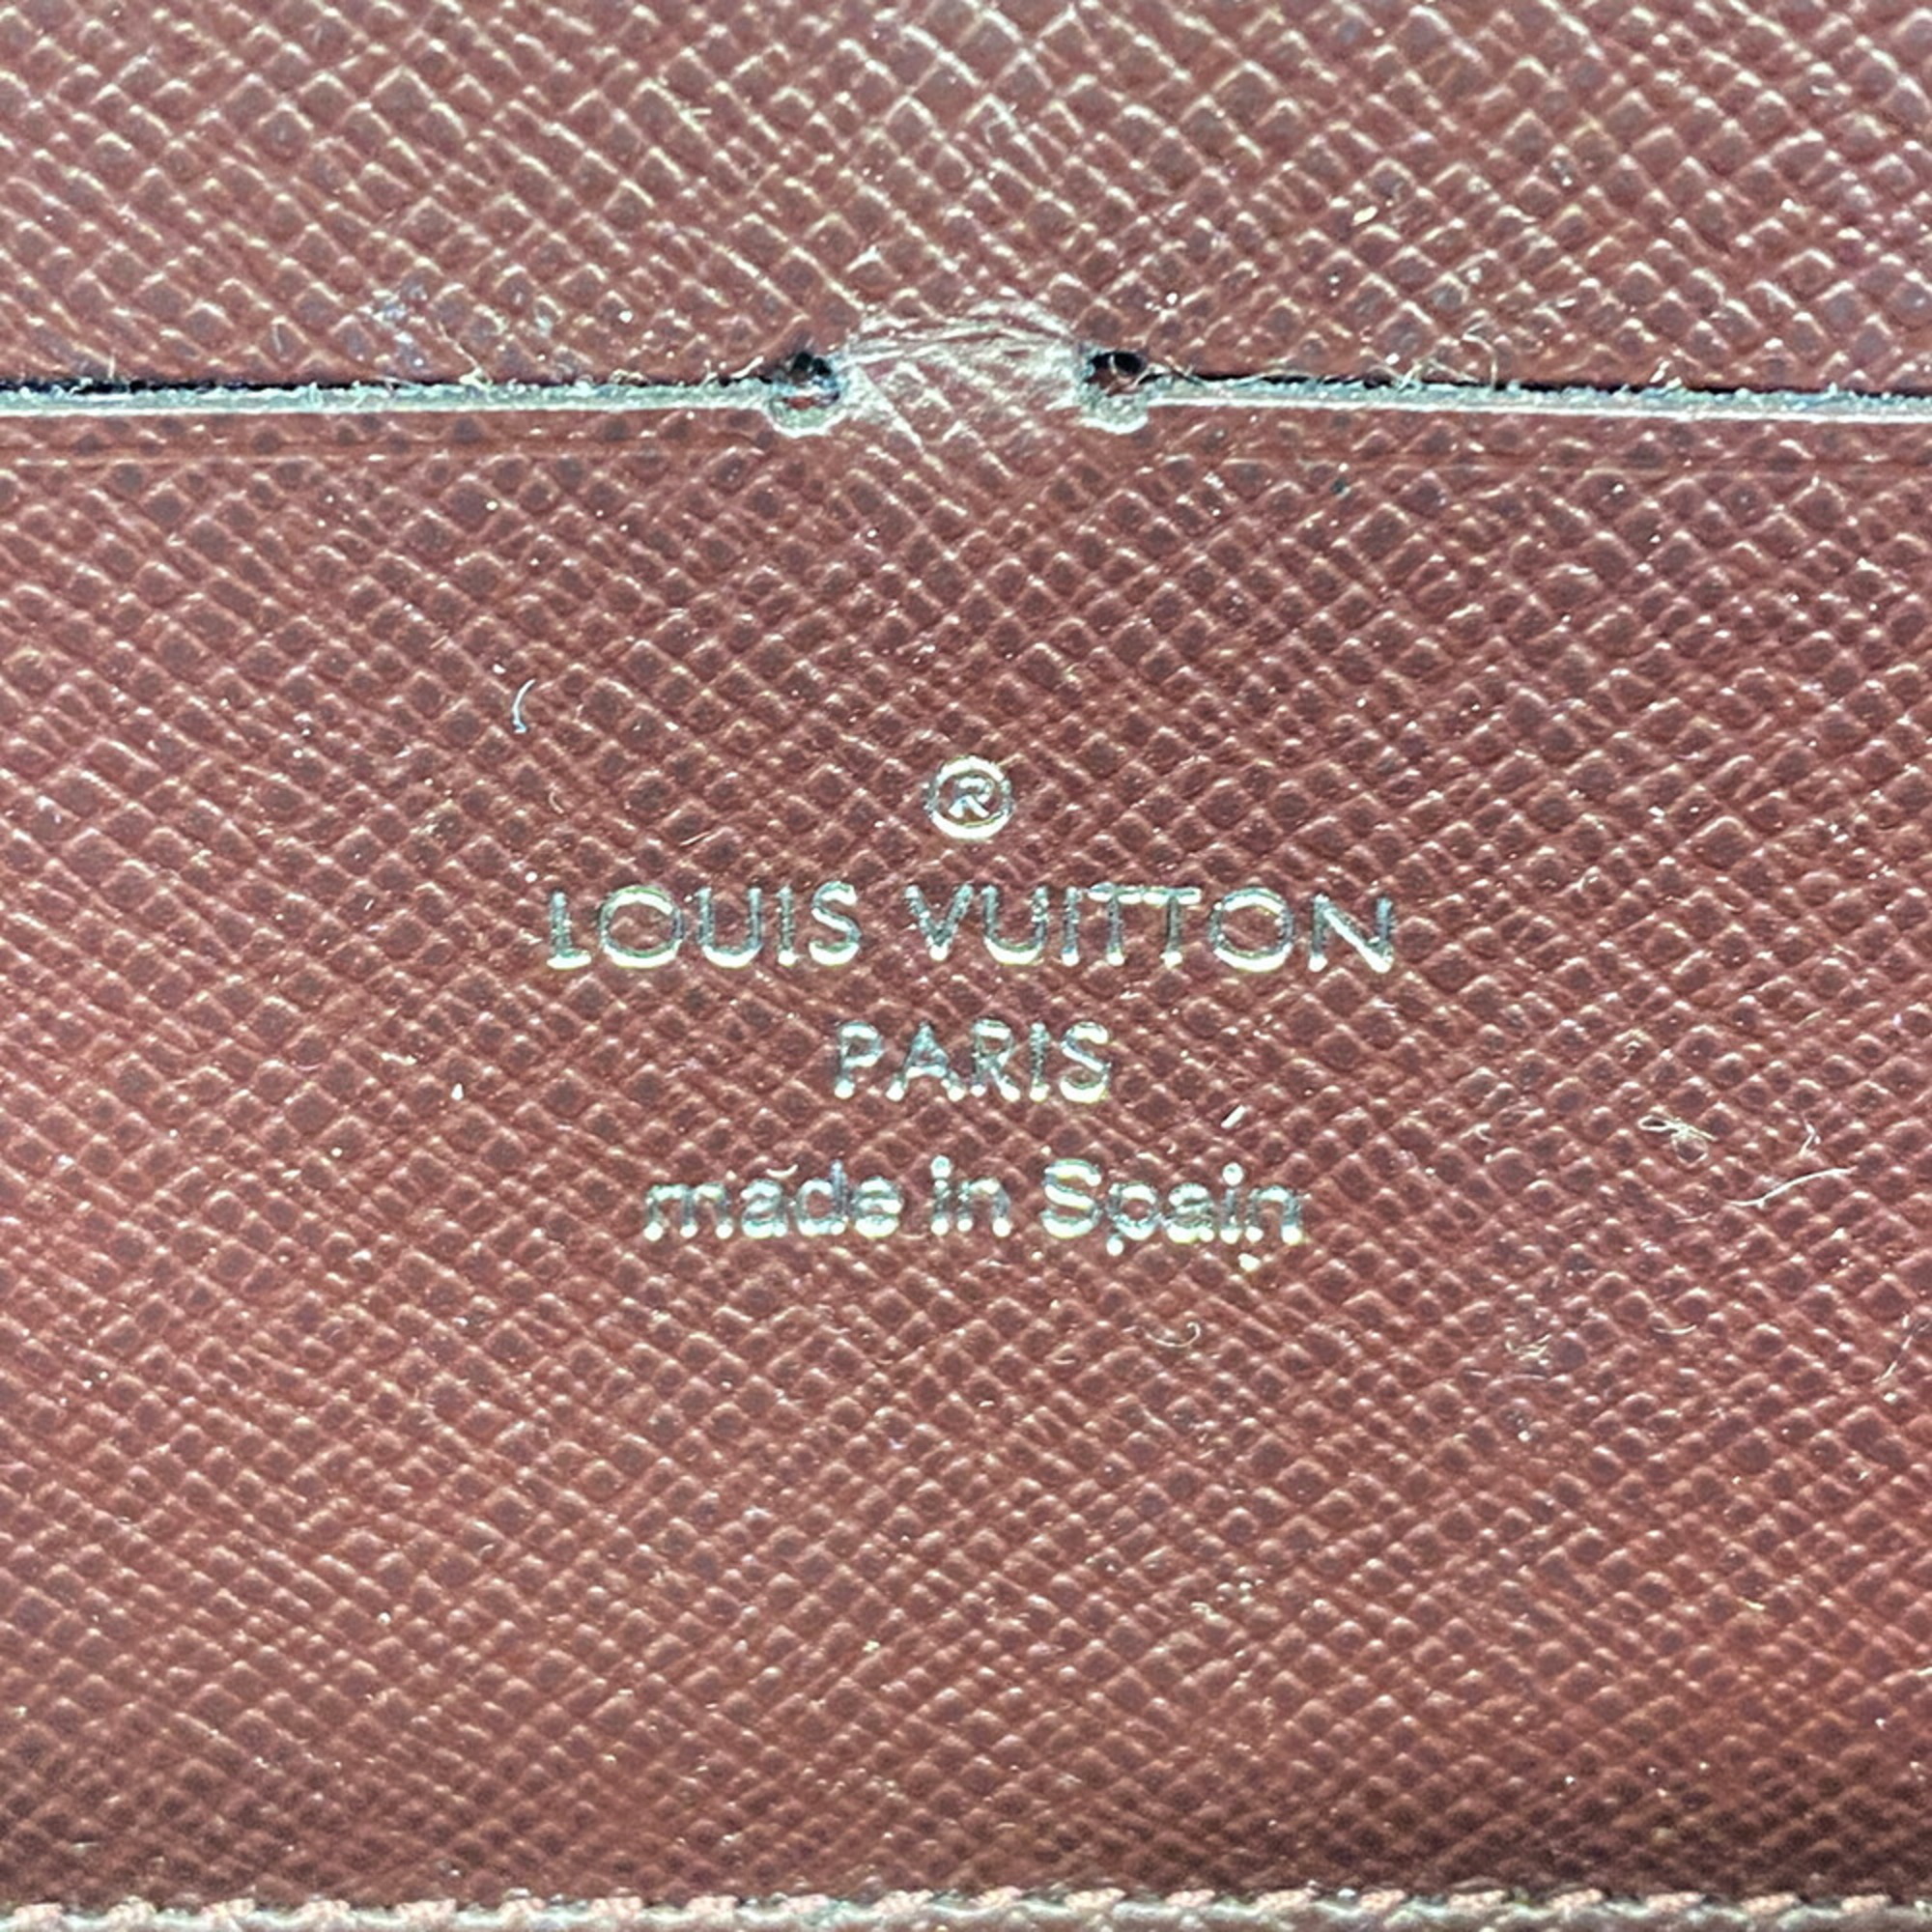 ルイ・ヴィトン(Louis Vuitton) ルイ・ヴィトン 長財布 エピ・エレクトリック ジッピーウォレット M60314 プリュンヌレディース